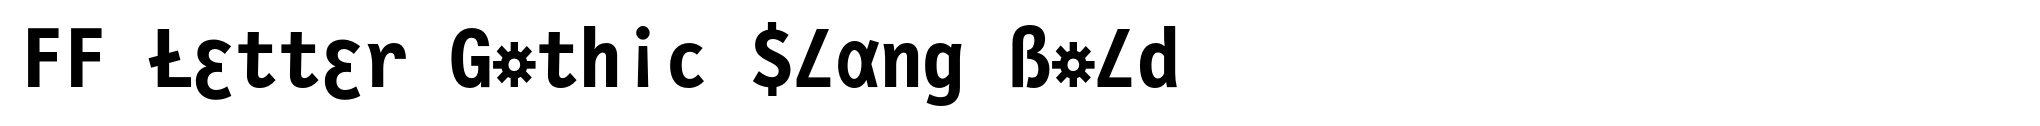 FF Letter Gothic Slang Bold image